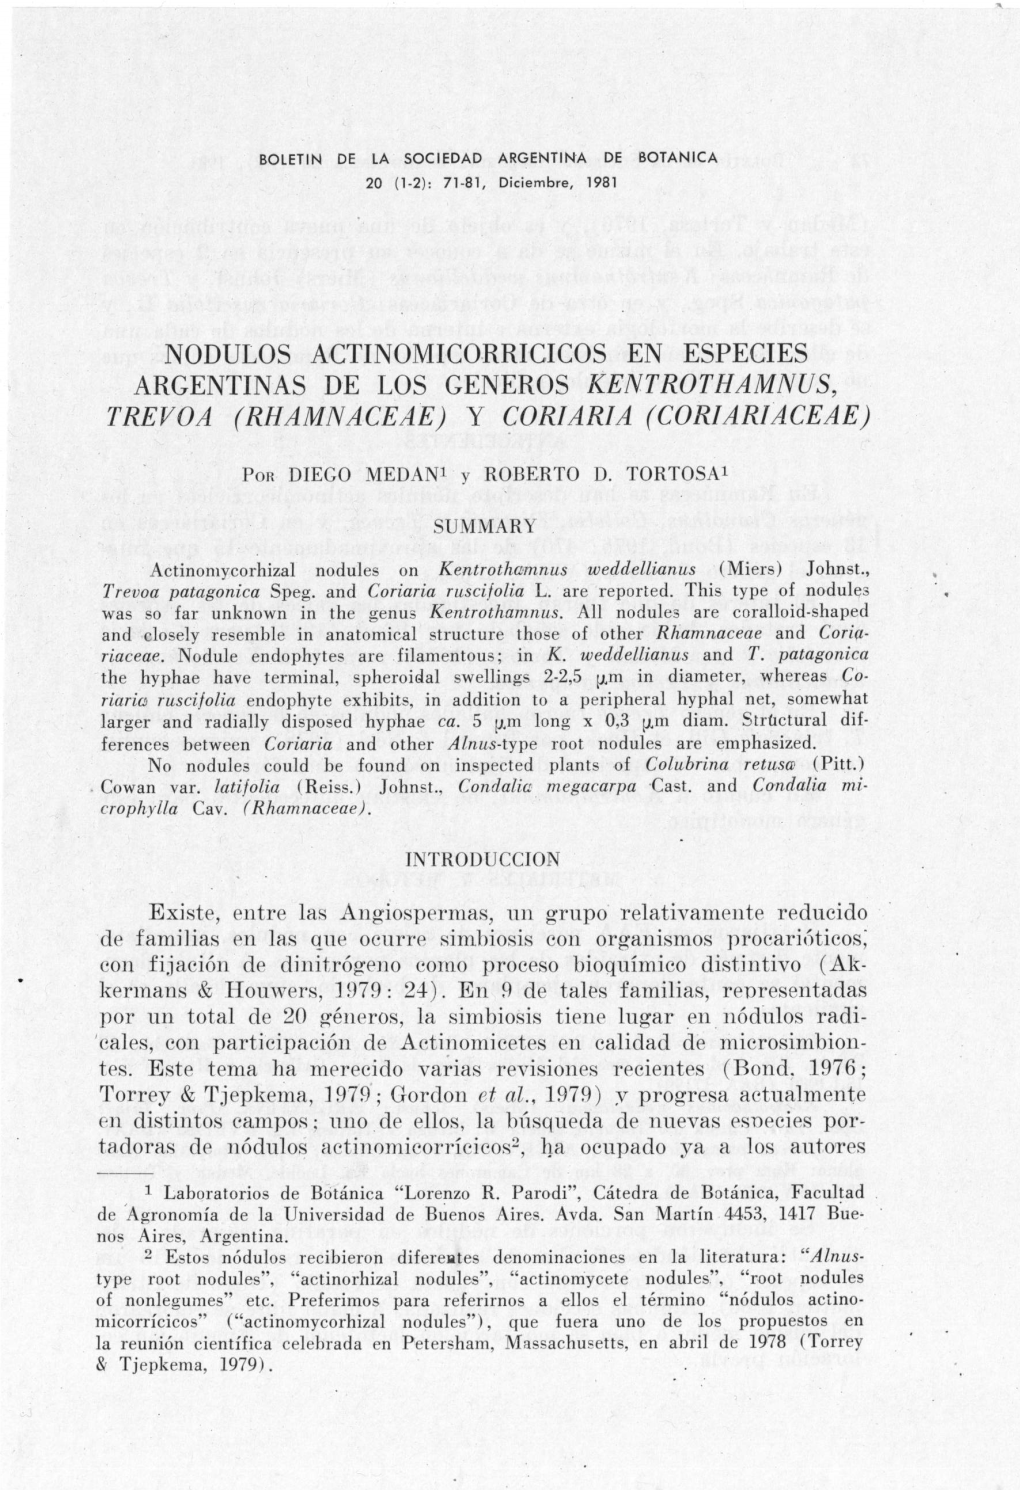 Nodulos Actinomicorricicos En Especies Argentinas De Los Generos Kentrothamnus, Trevoa (Rhamnaceae) Y Coriaria (Coriariaceae)